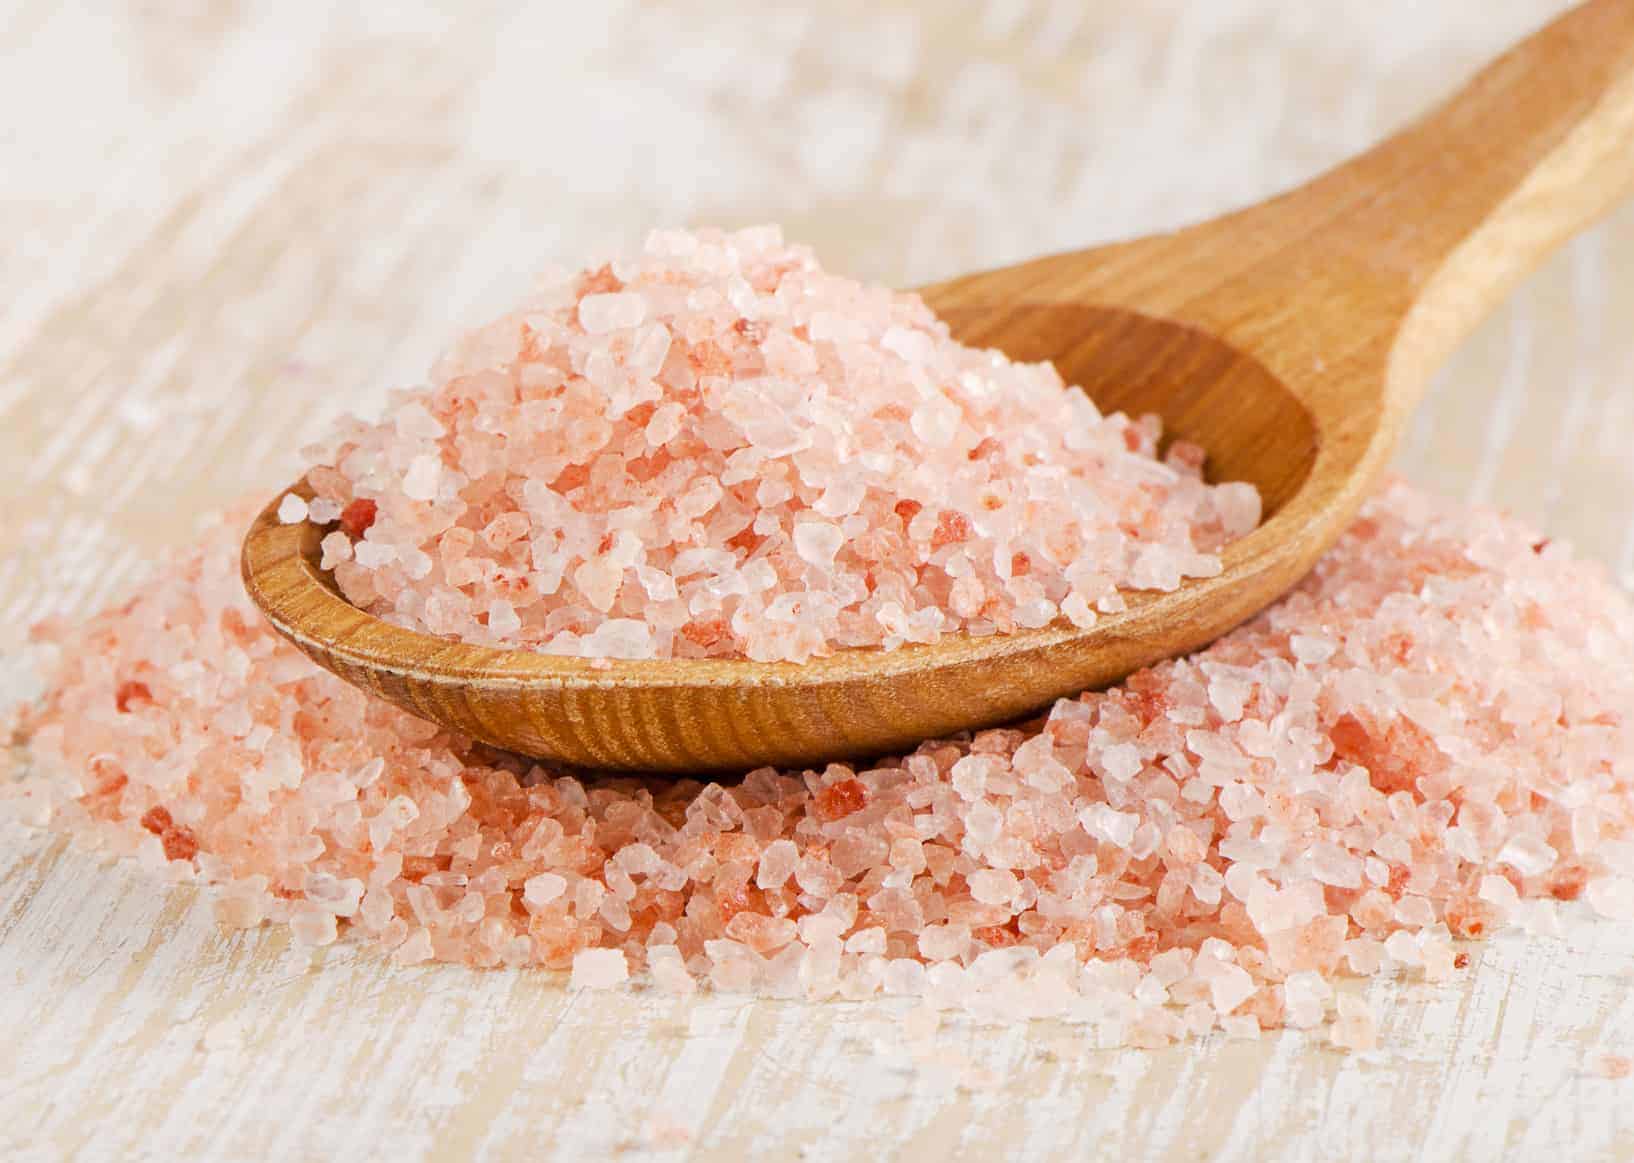 Résultat de recherche d'images pour "himalayan salt"